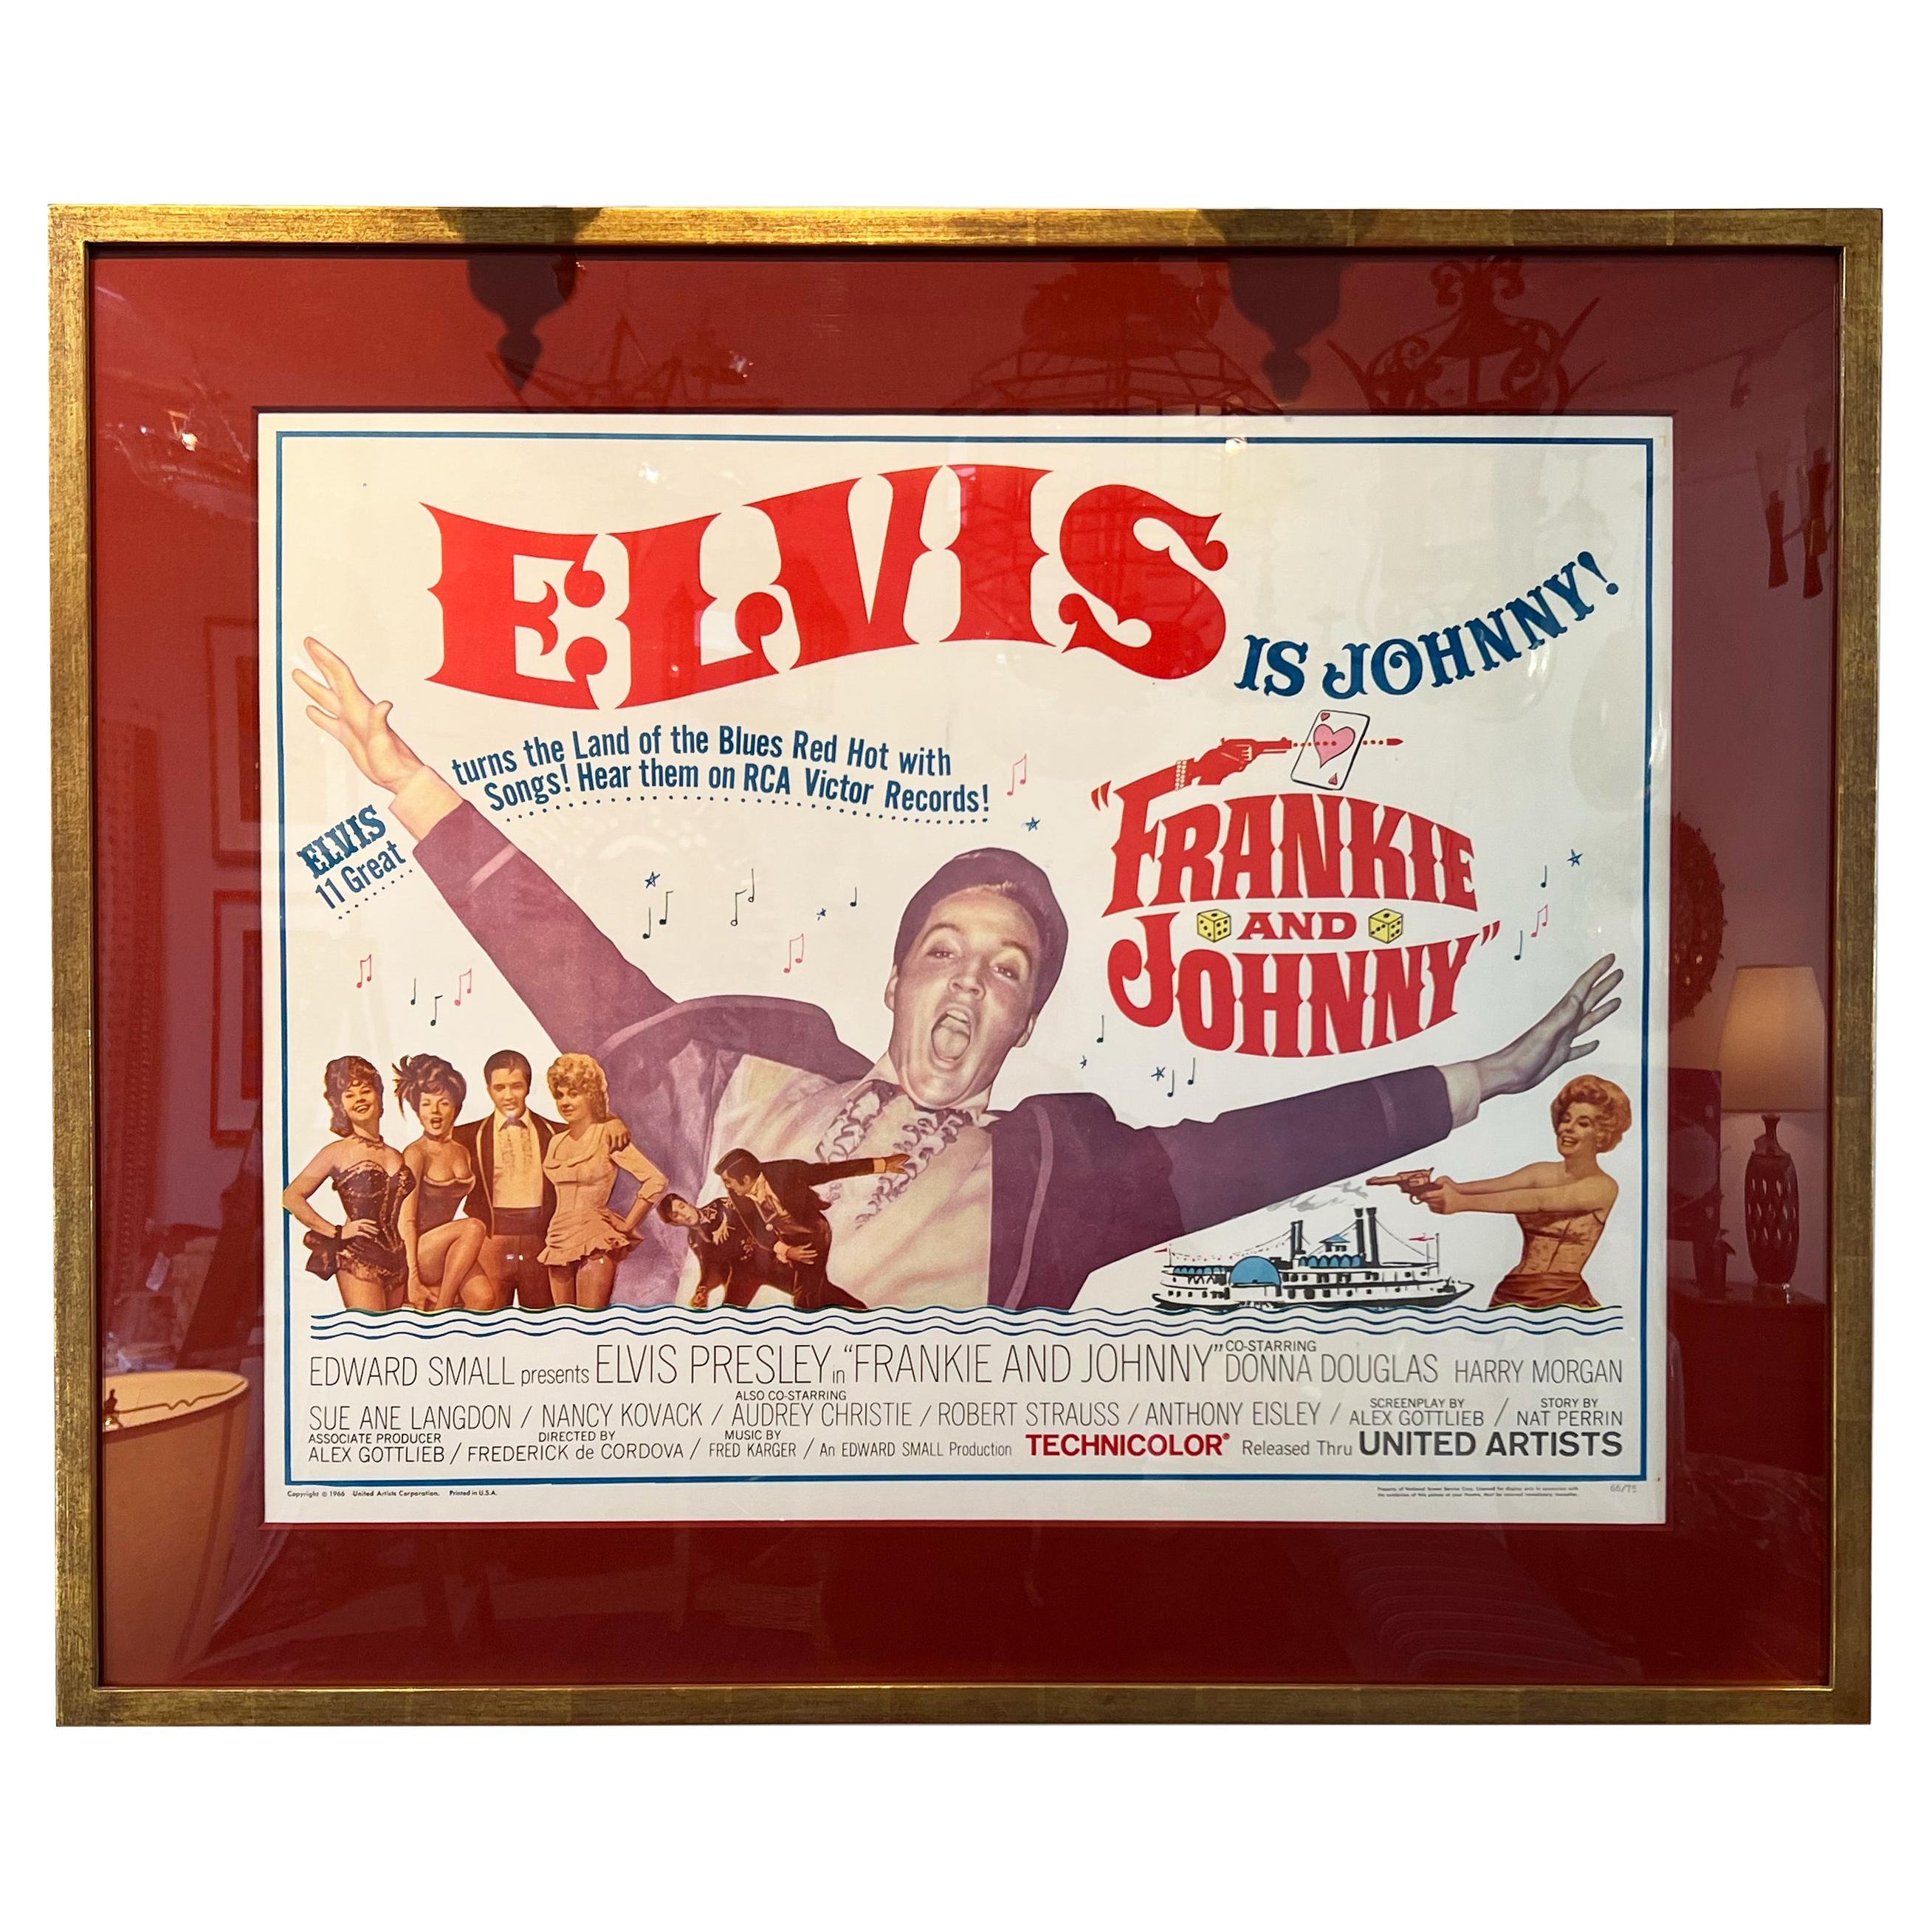 Framed, Original Vintage "Elvis Presley, Frankie and Johnny" Poster